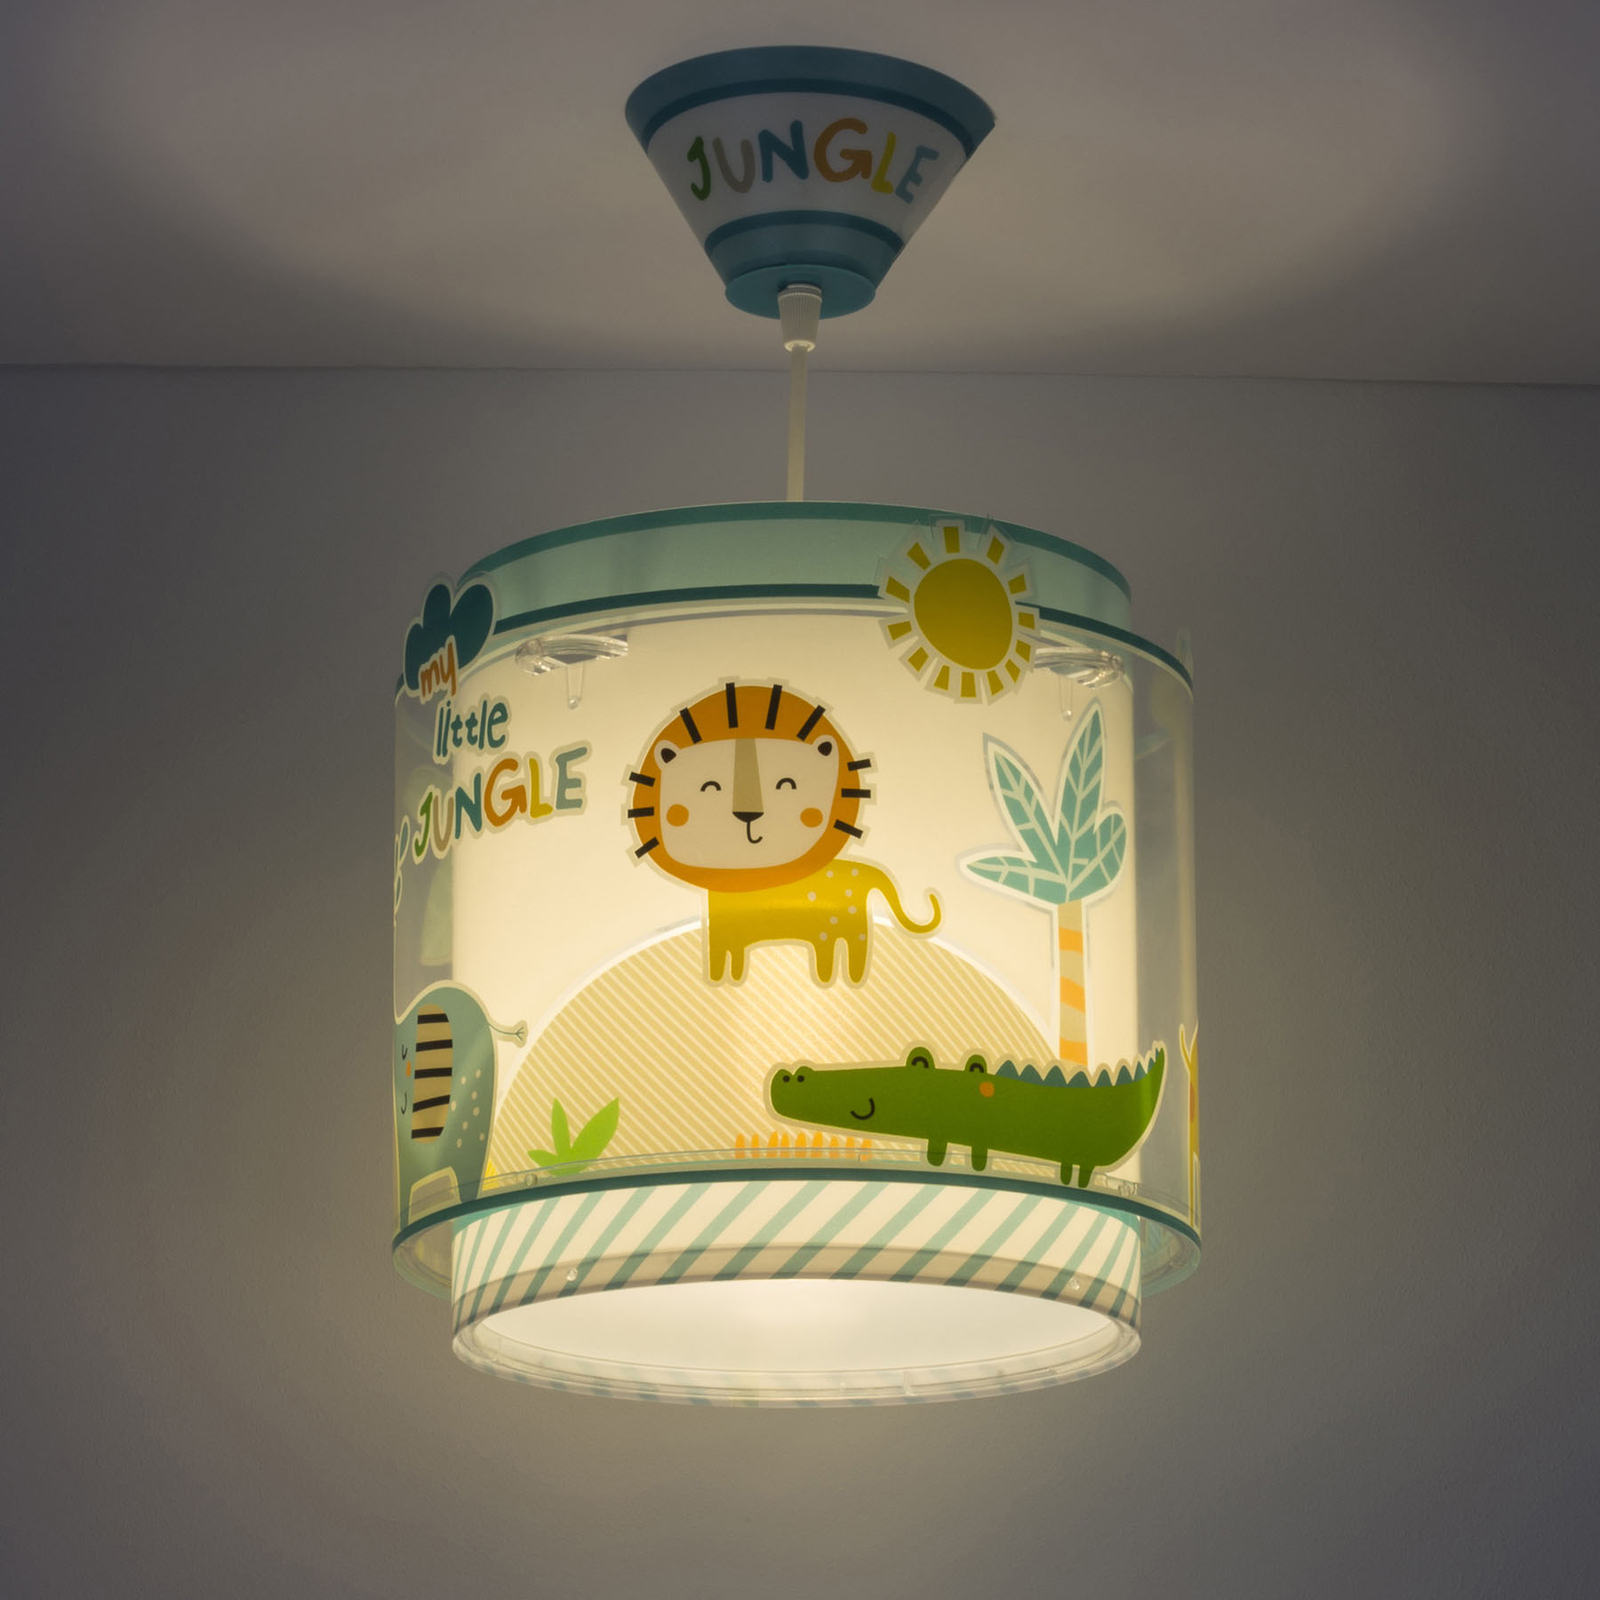 Little Jungle hanglamp voor kinderen, 1-lamp